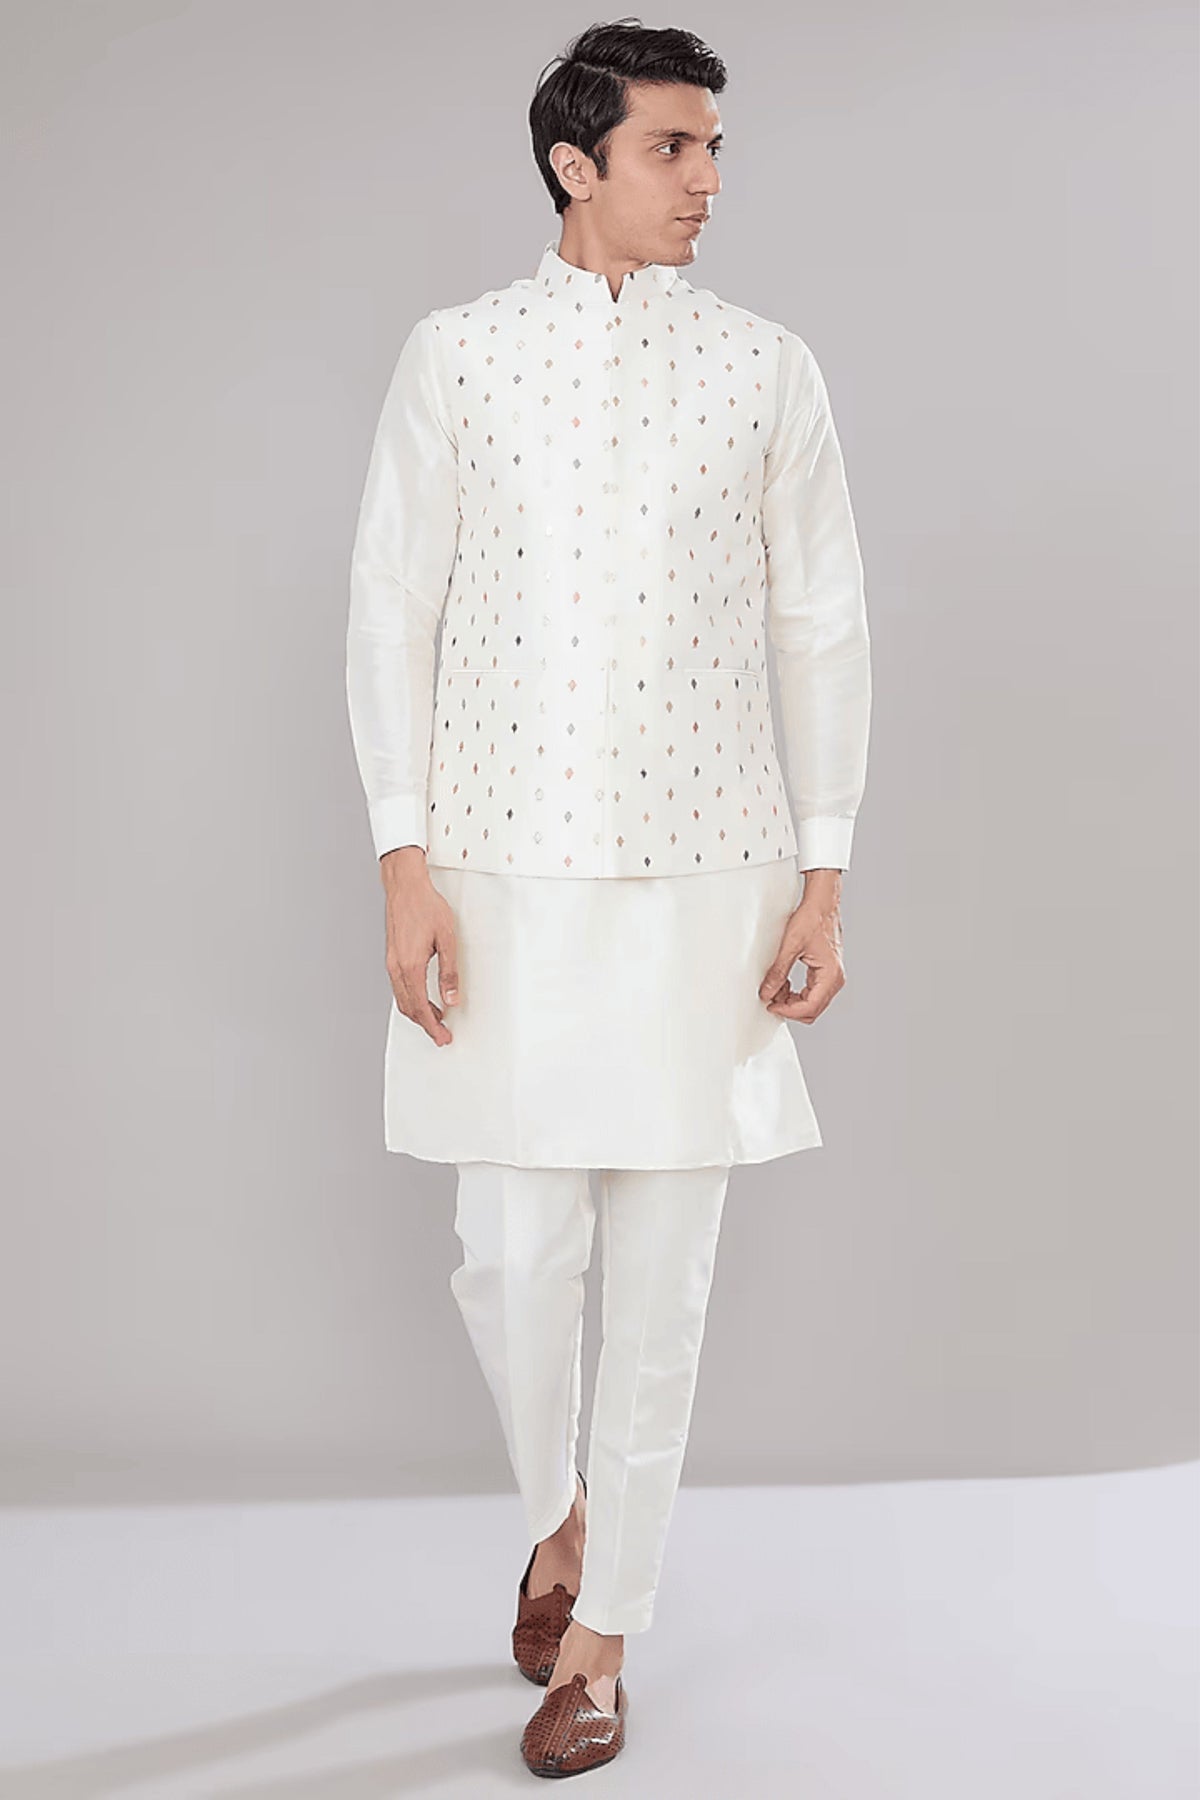 Off White Embroidered Kurta-jacket Set